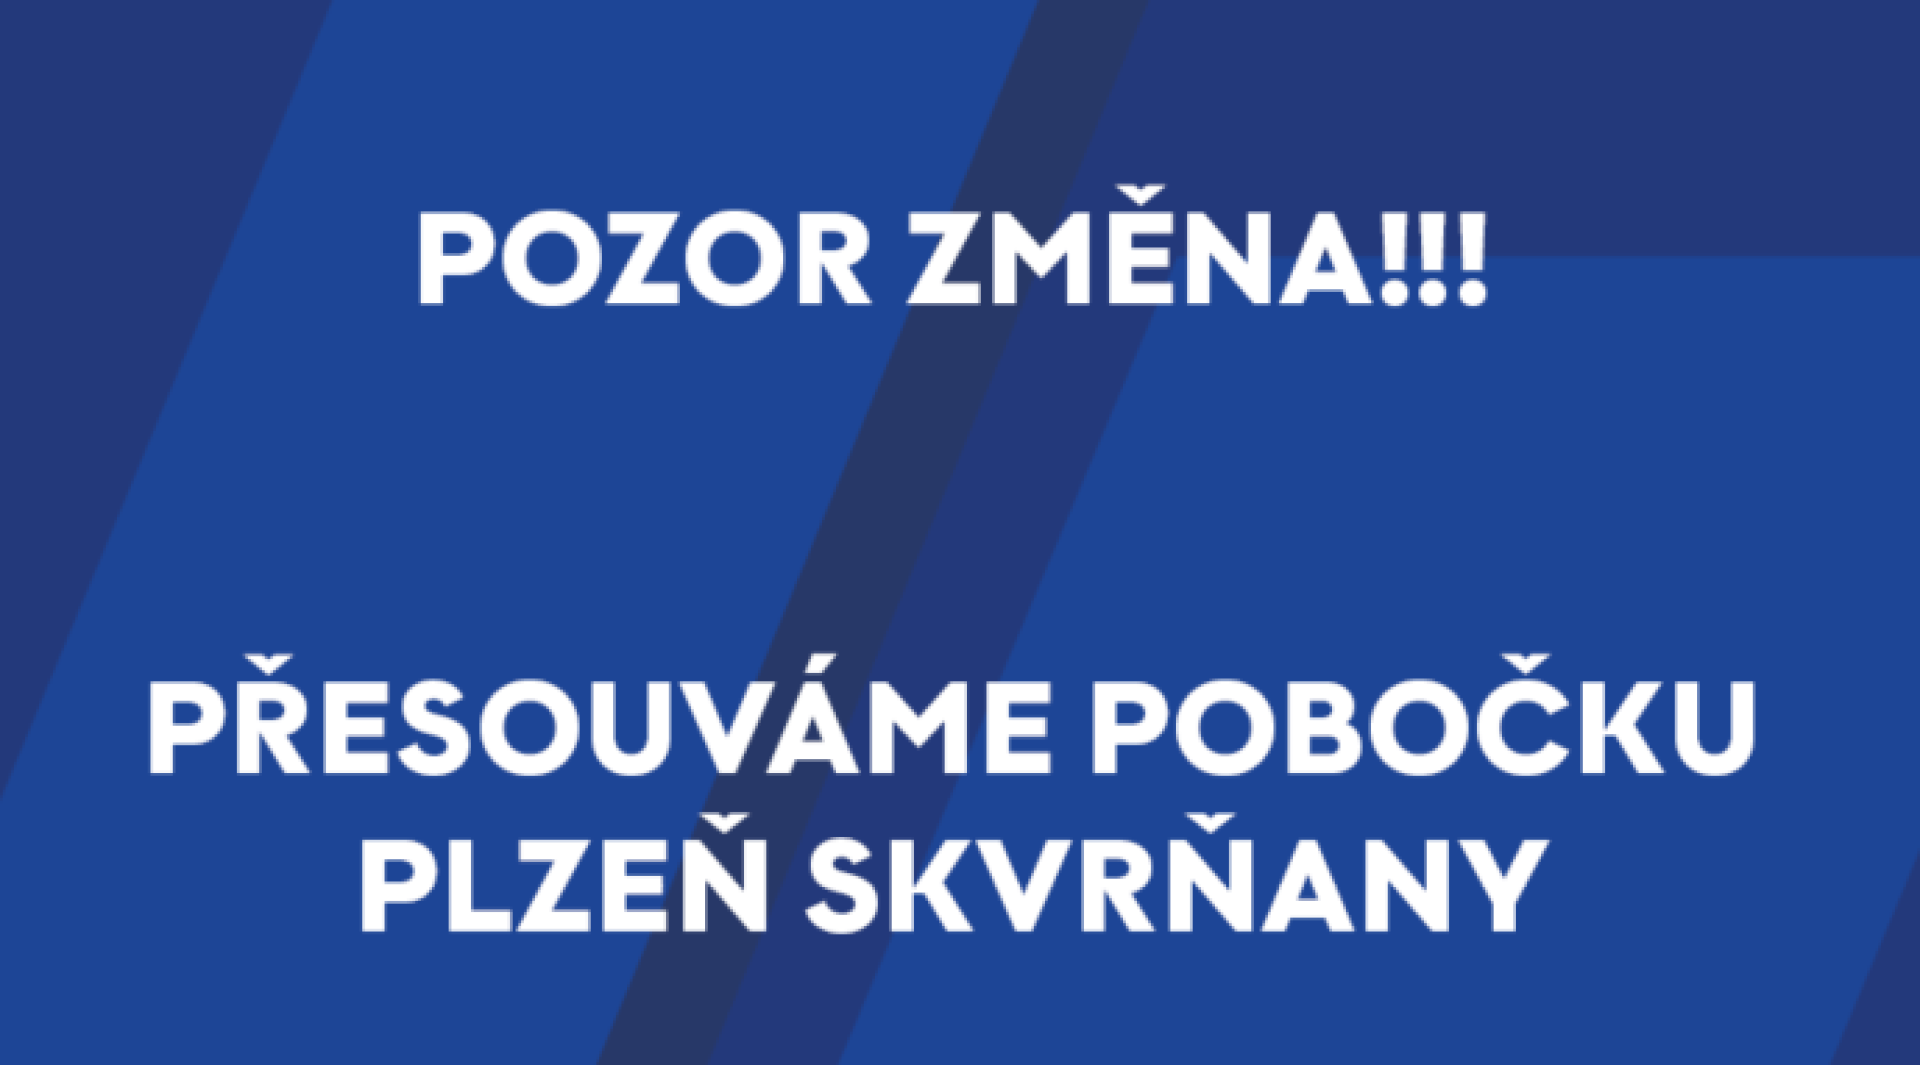 Přesouváme pobočku Plzeň - Skvrňany !!!